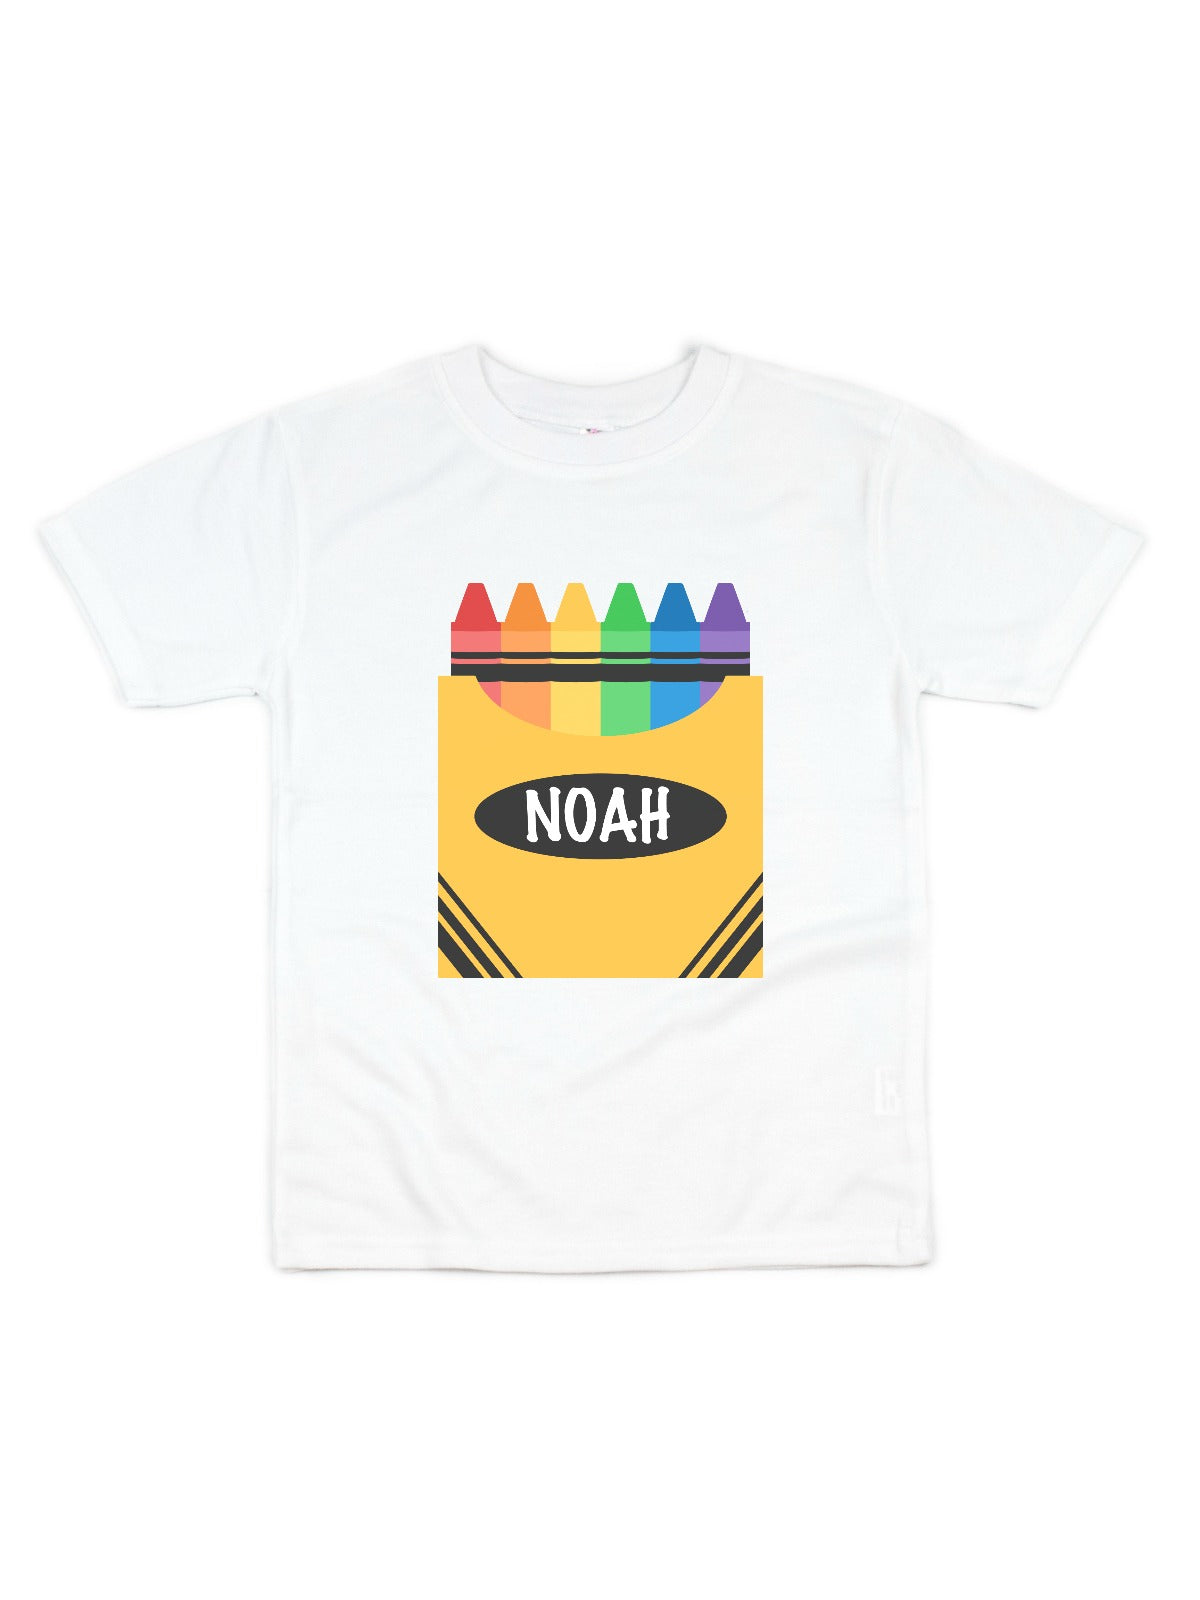 kids personalized crayon box shirt